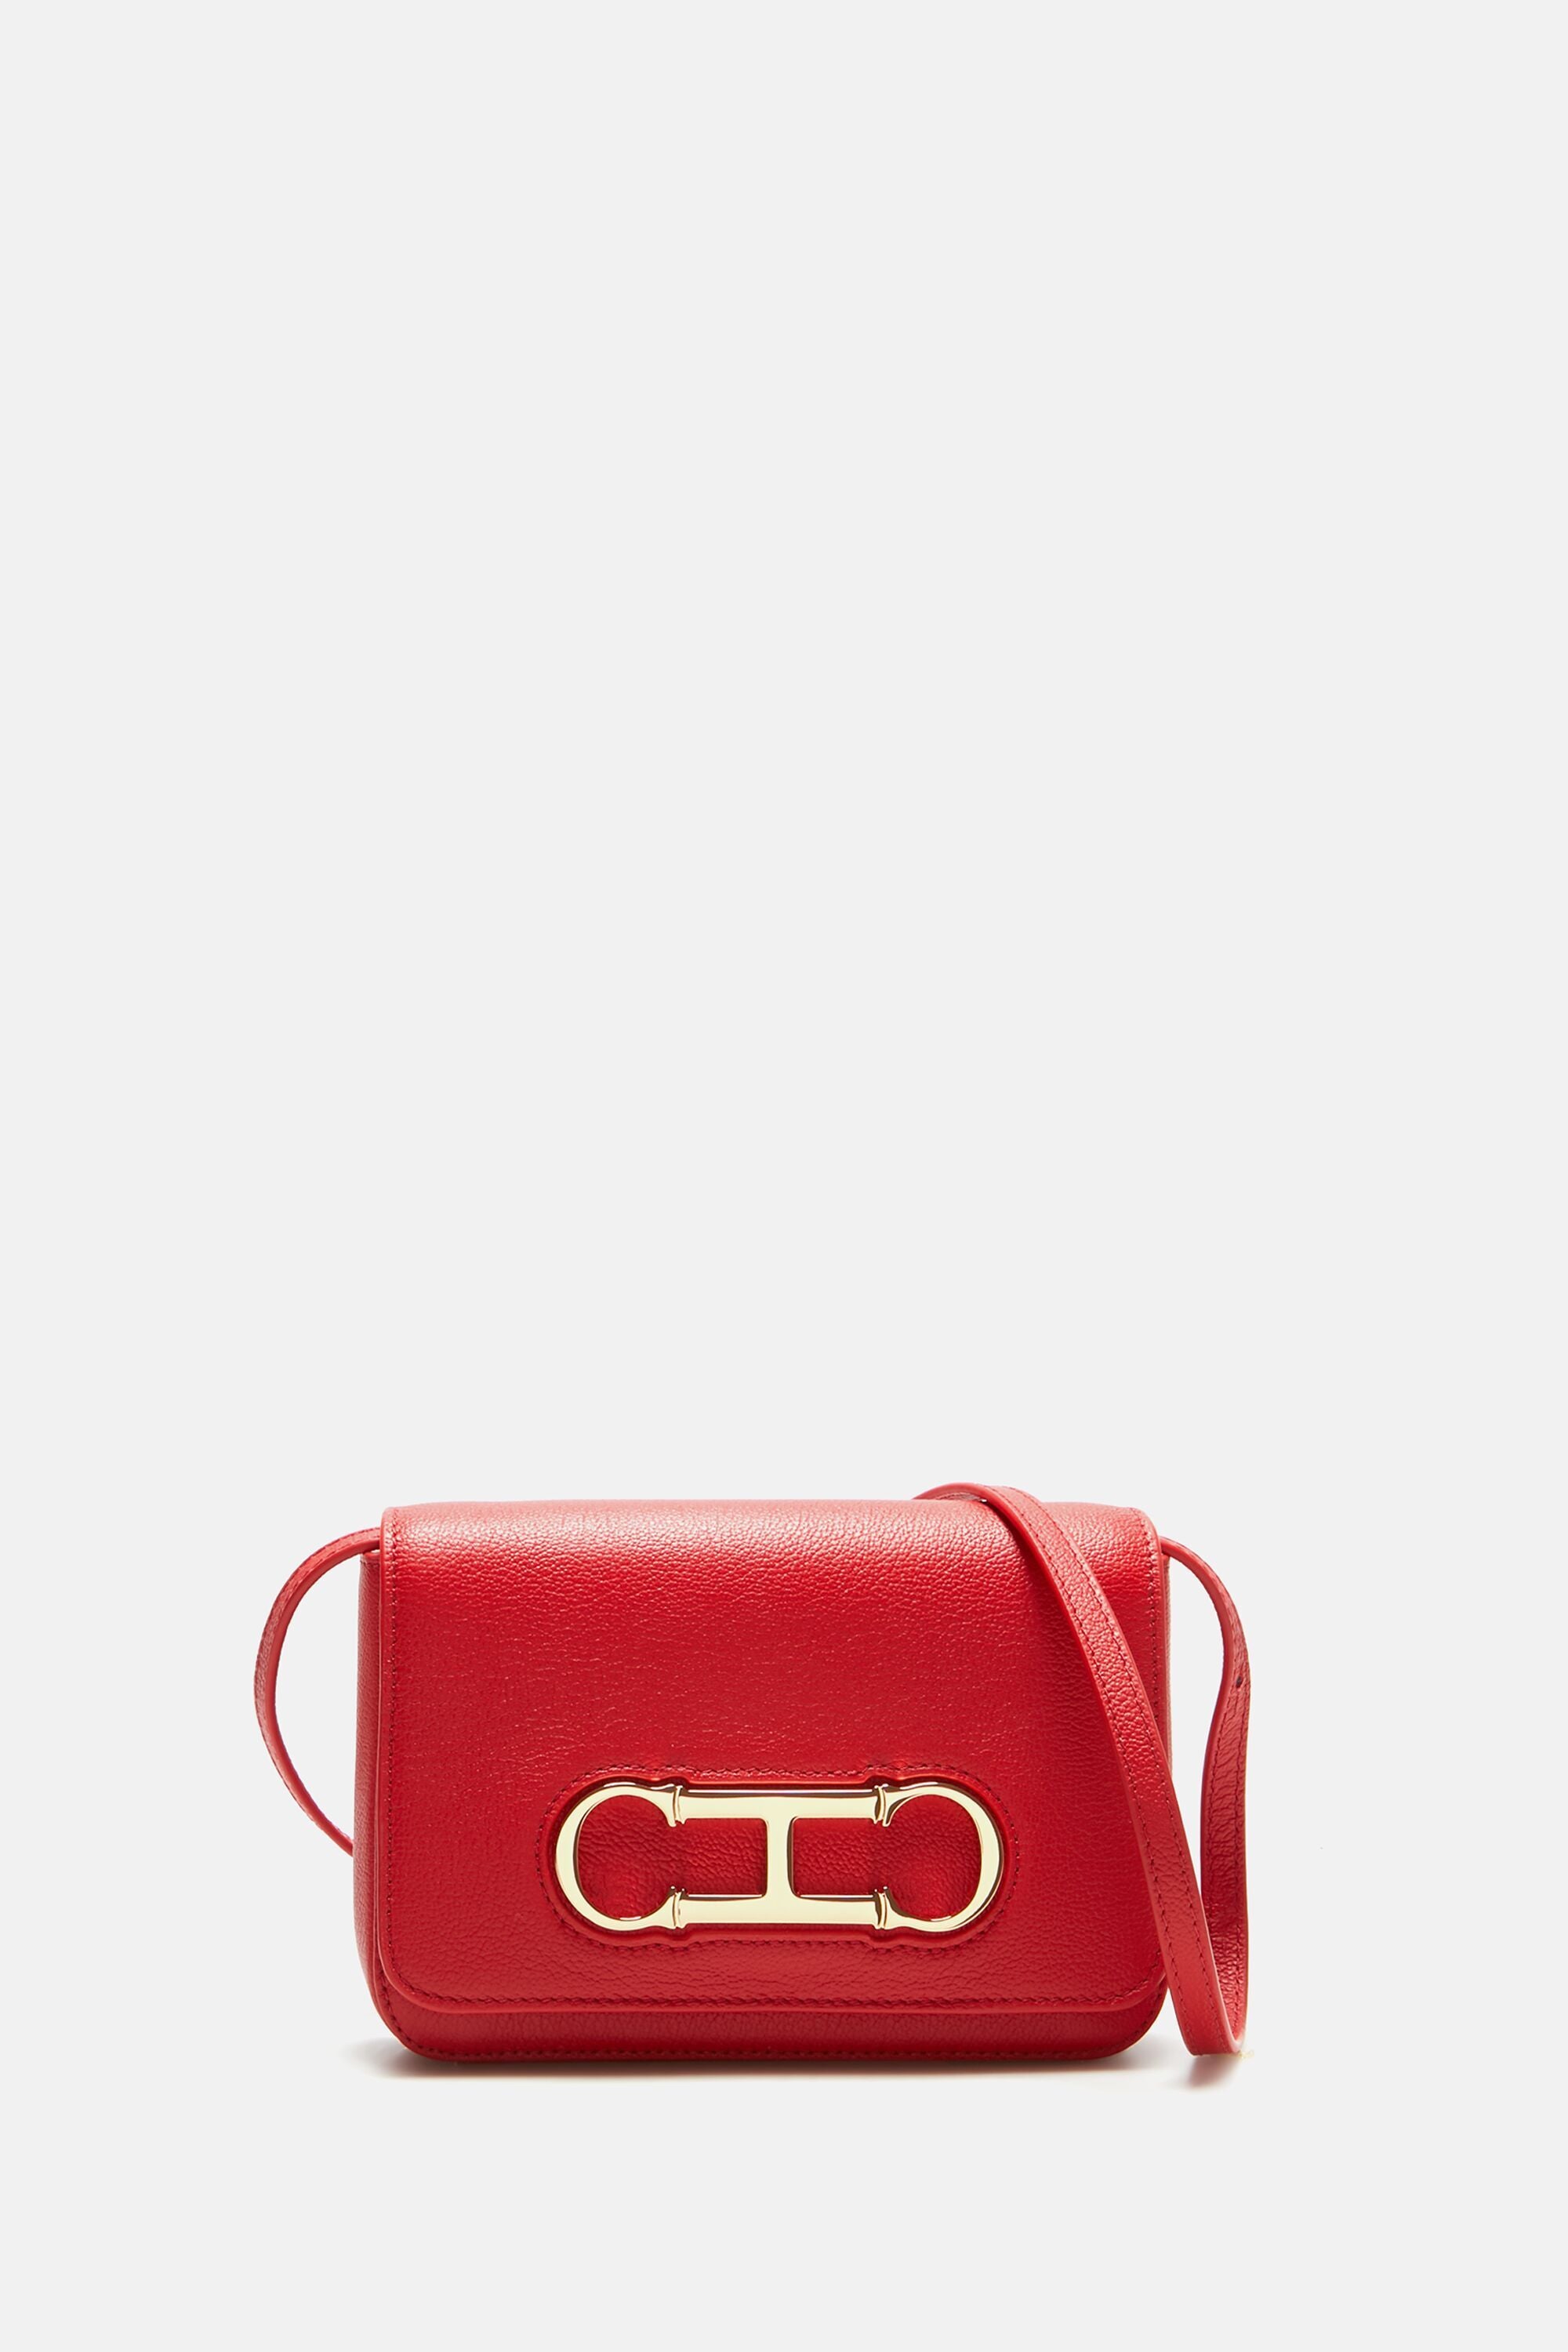 Red Handbags | Red Backpacks | Fiorelli.com